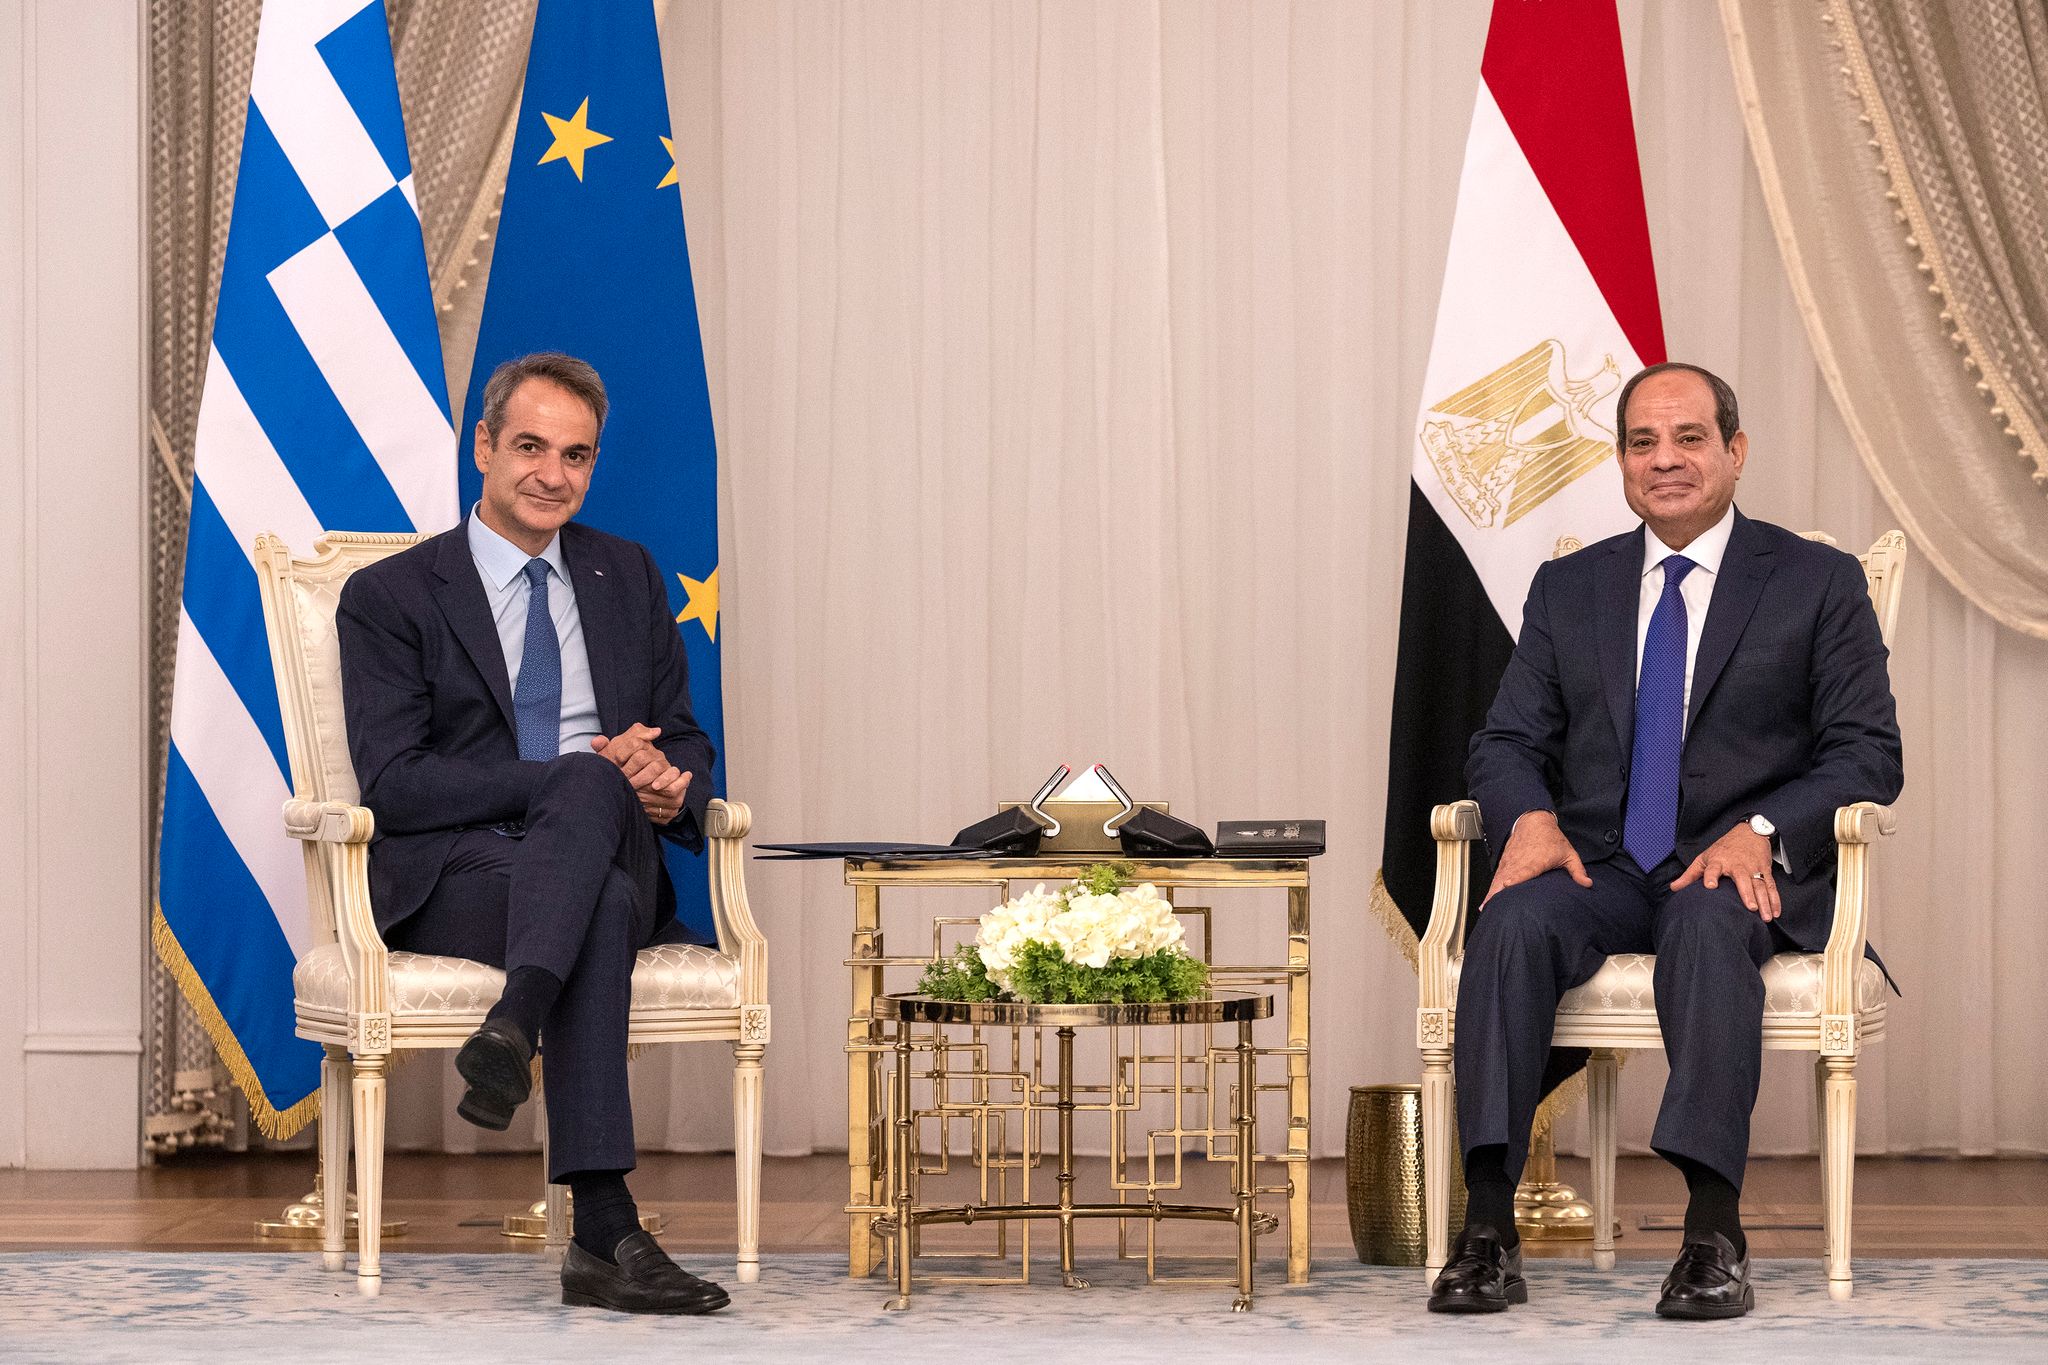 Μητσοτάκης μετά τη συνάντηση με Σίσι: Αυτοτελείς οι ελληνοαιγυπτιακές σχέσεις – Δεν ετεροκαθορίζονται